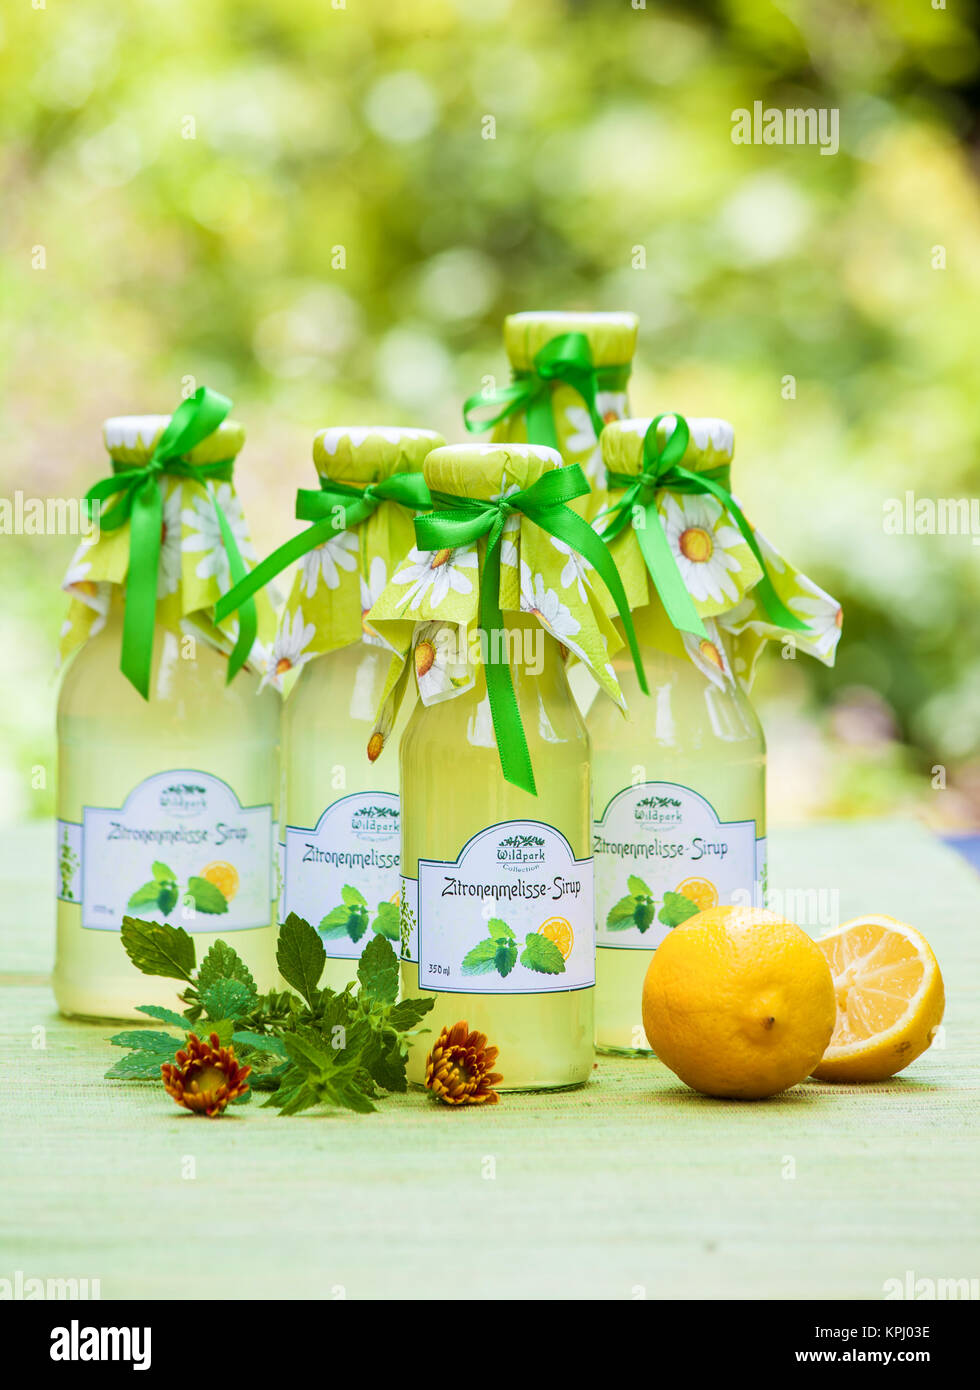 Flaschen mit Zitronenmelisse Sirop im Garten Banque D'Images